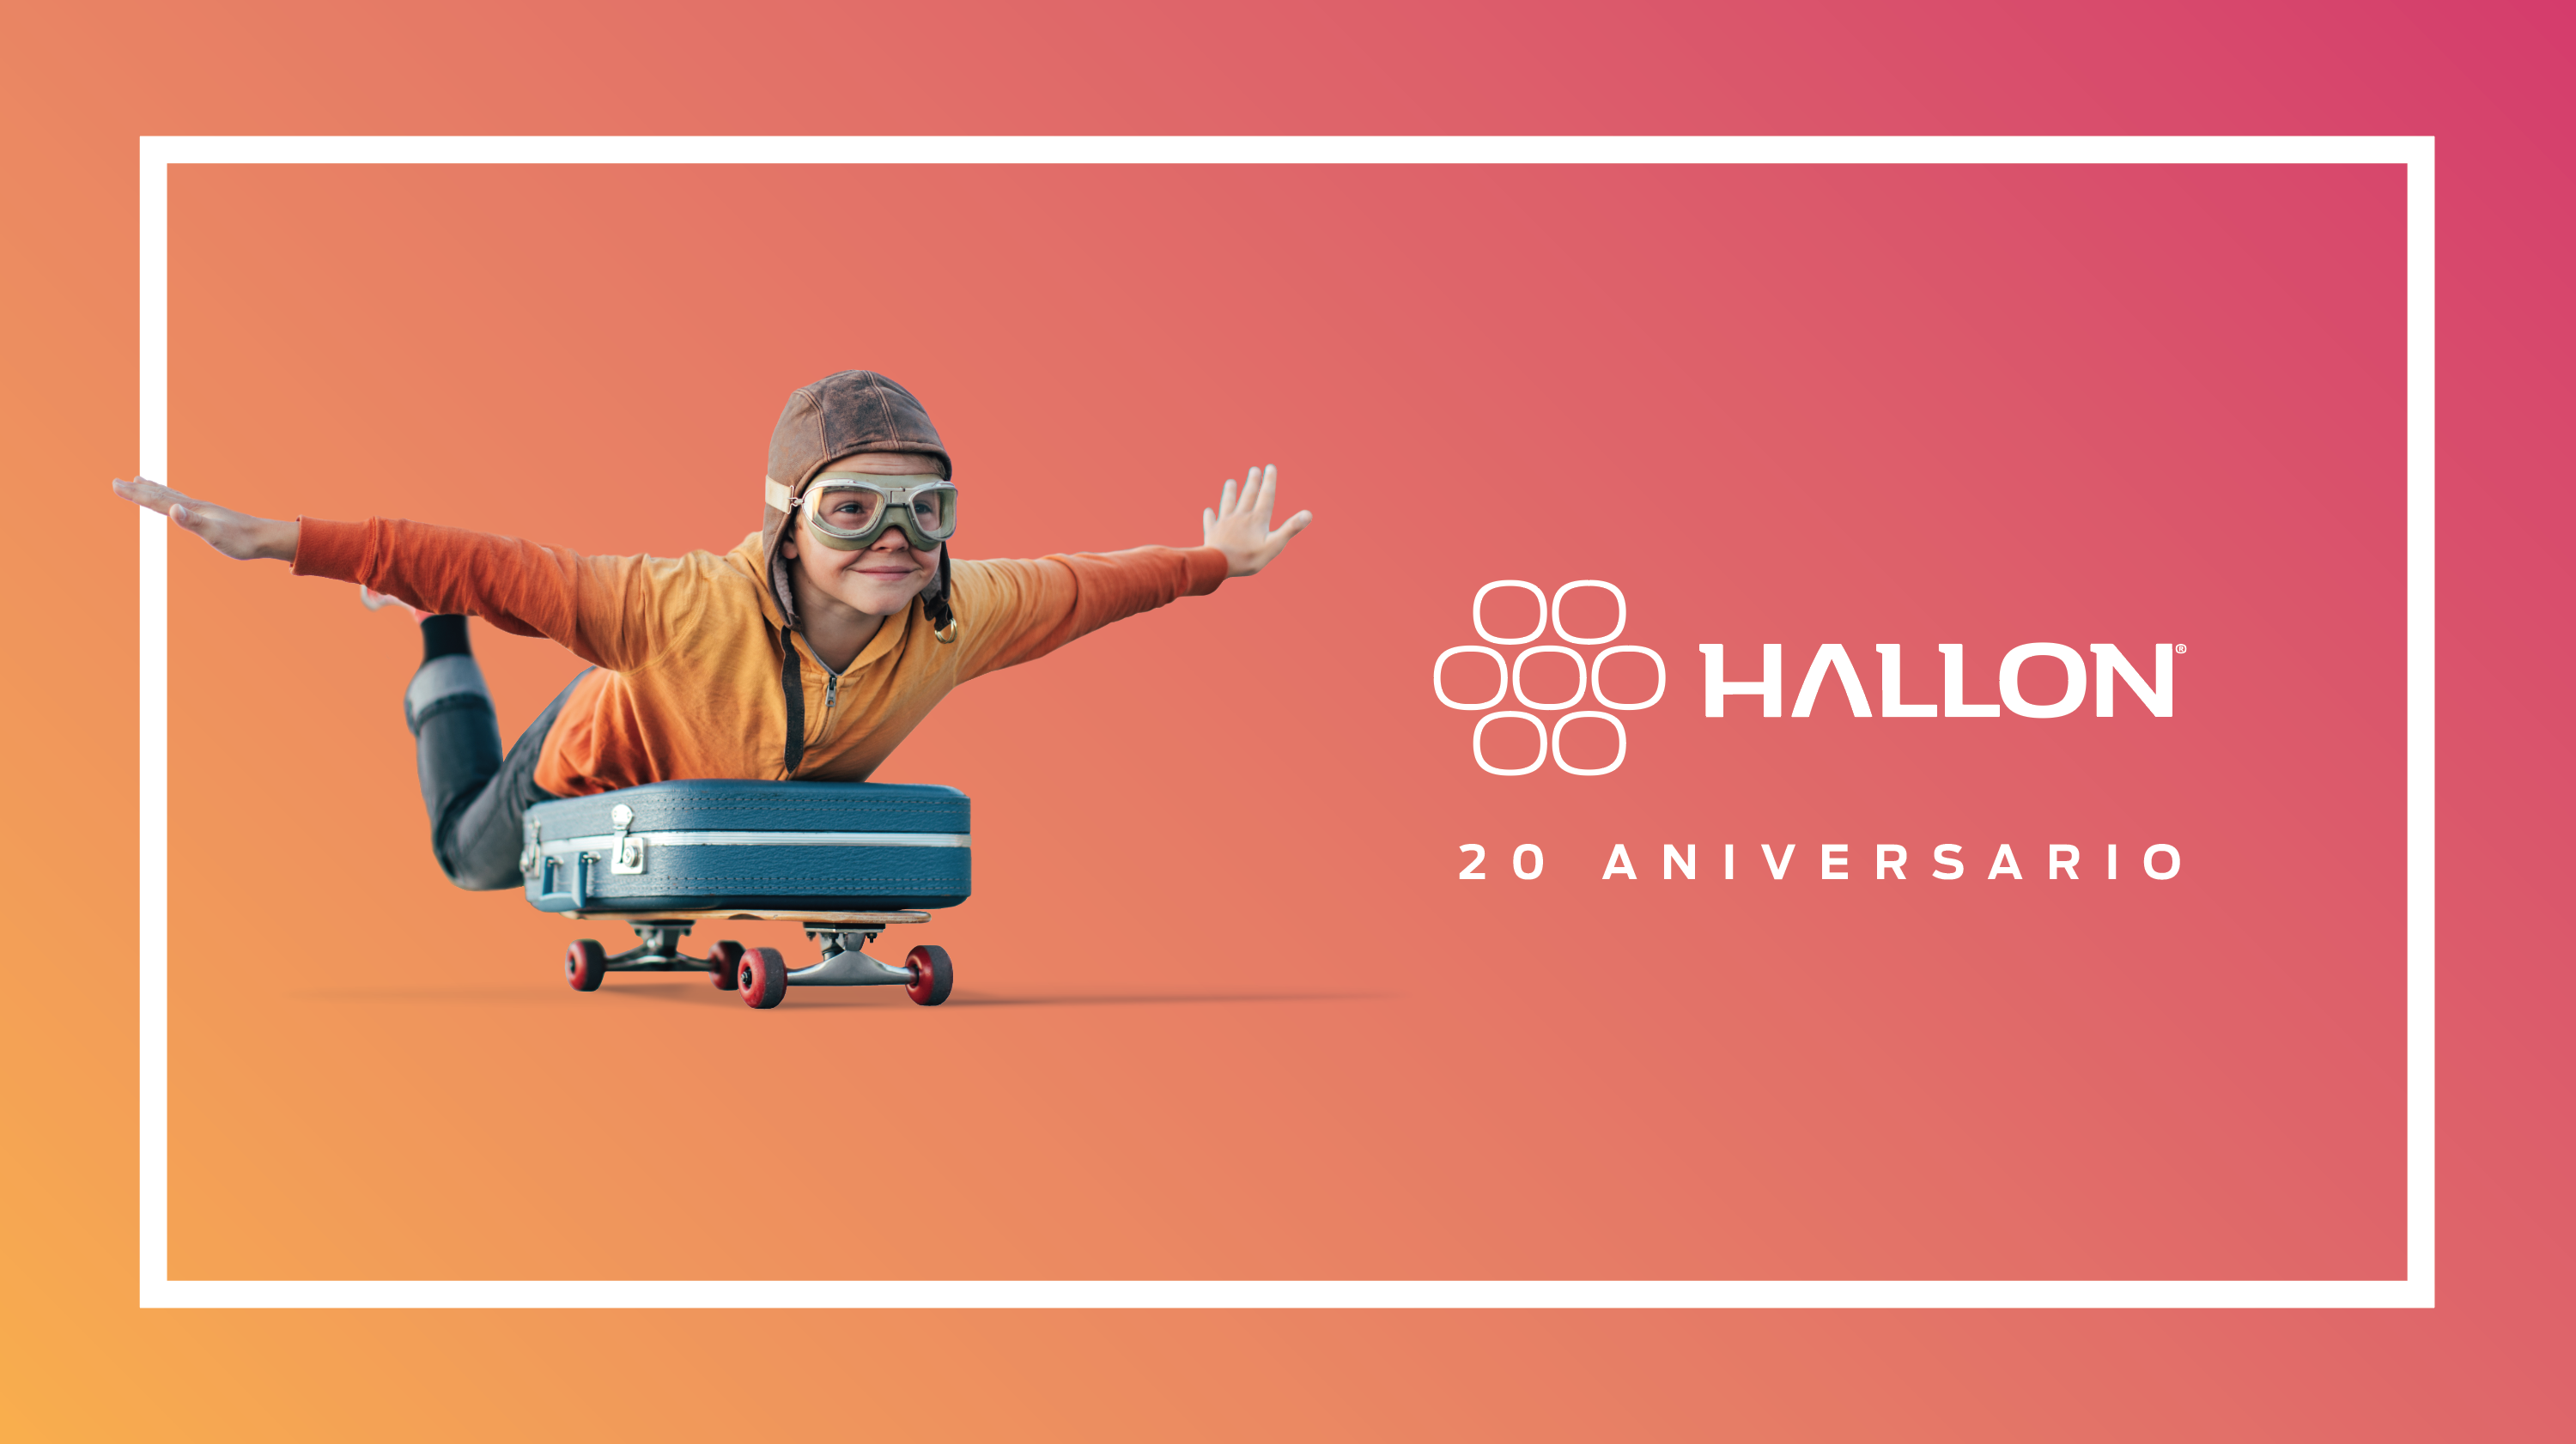 pr noticias | Hallon cumple 20 años e inicia su expansión internacional